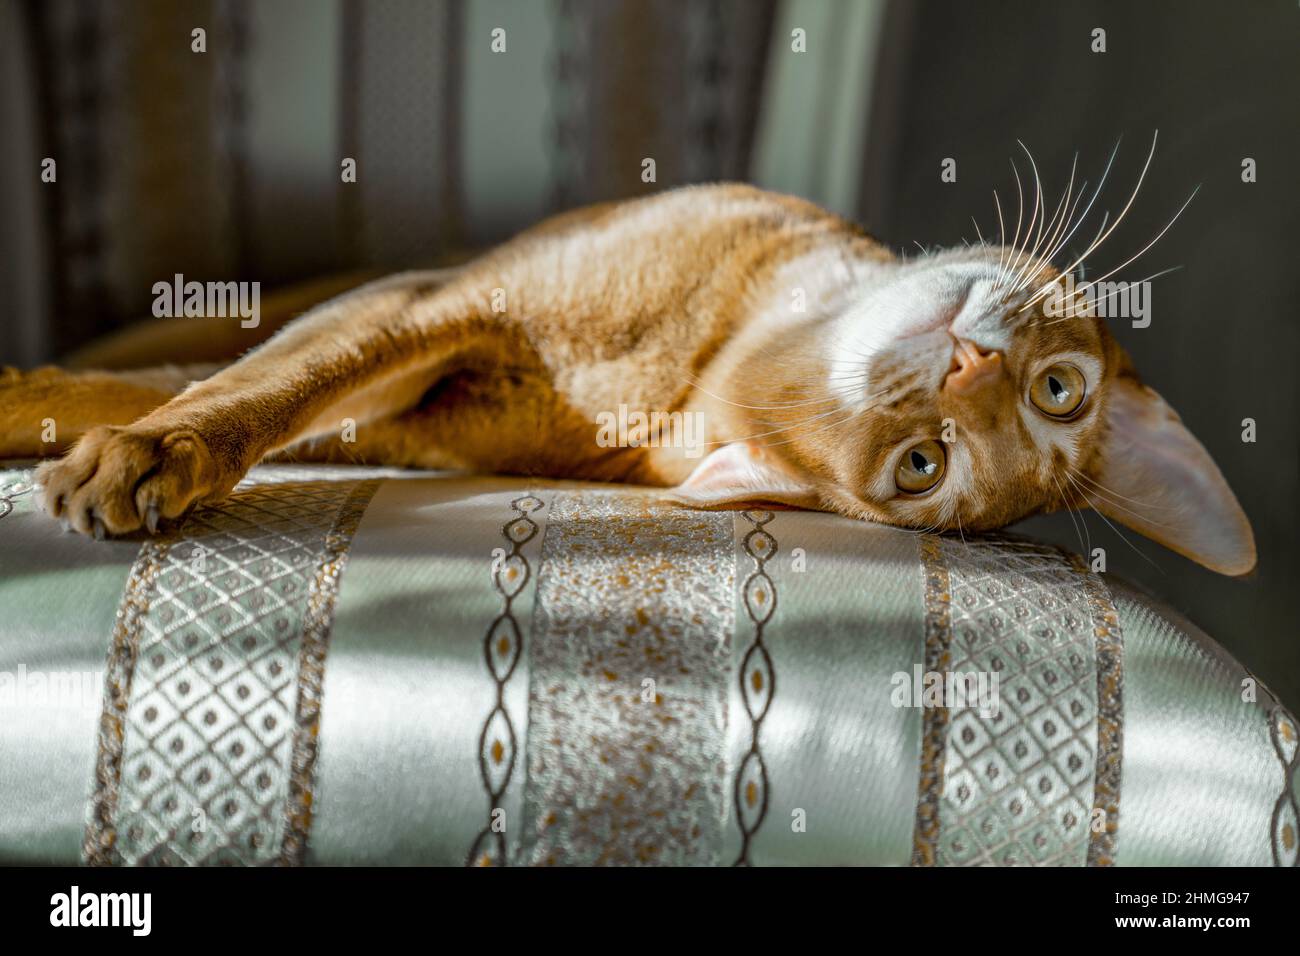 Le chat rouge de race abyssinienne repose sur une chaise dans une posture drôle. Caloose-up. Banque D'Images